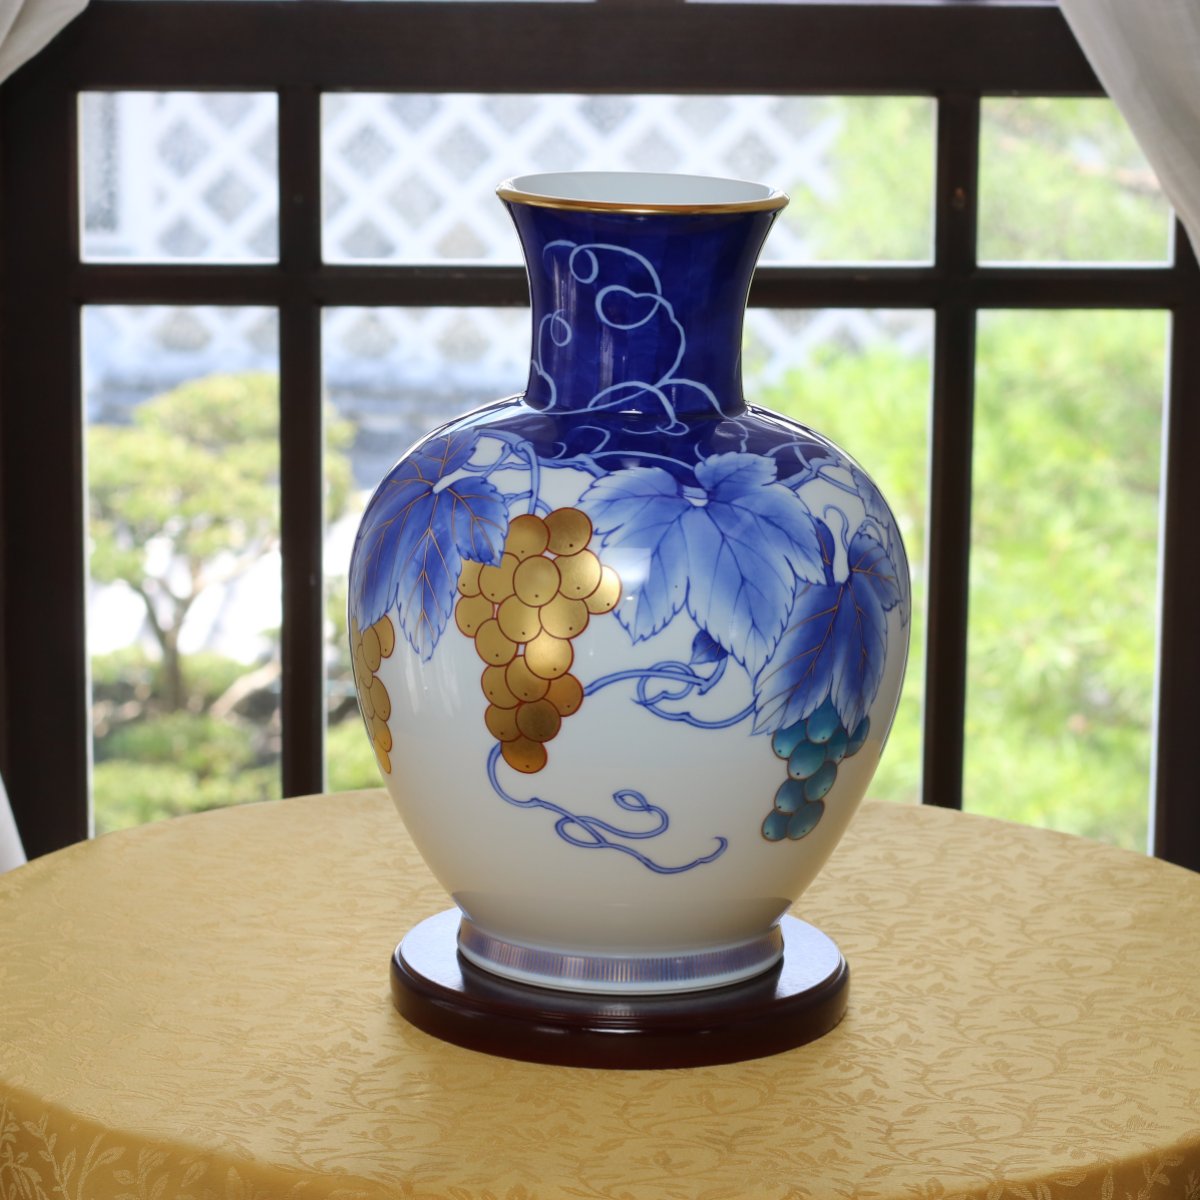 花瓶2|有田焼の老舗-香蘭社オンライン